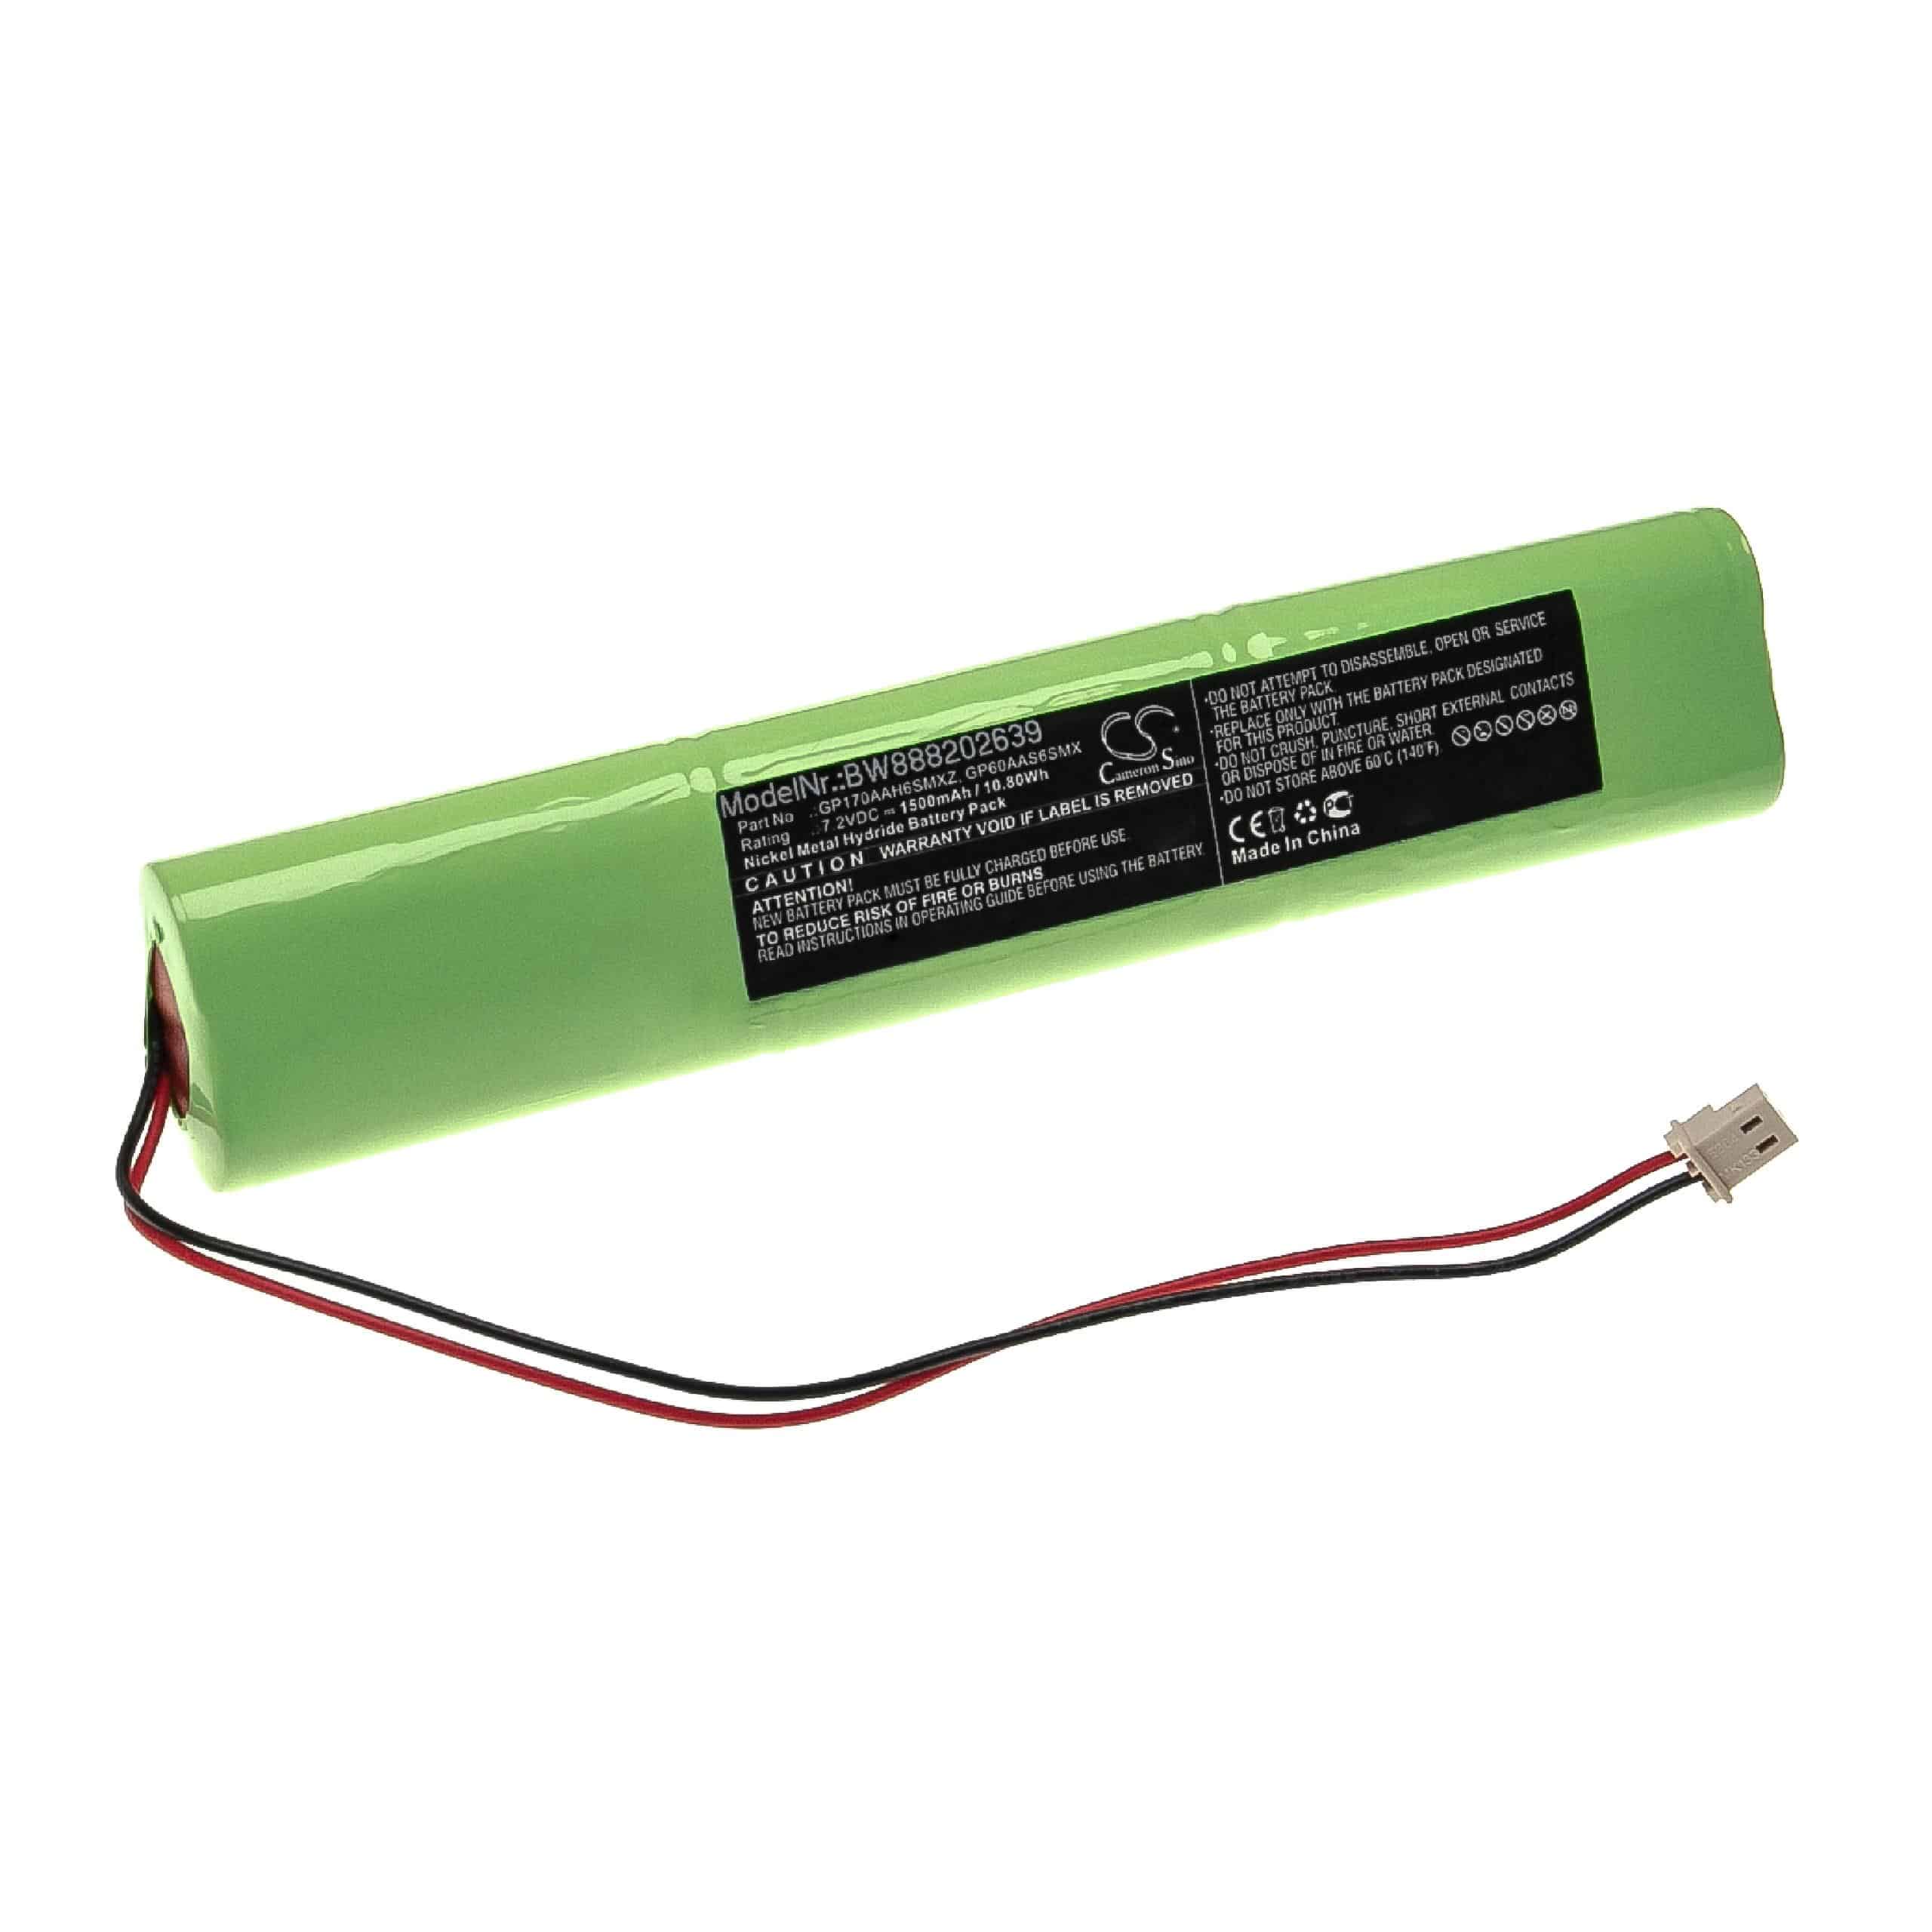 Batterie remplace AEM GP170AAH6SMXZ, GP60AAS6SMX pour centrale d'alarme - 1500mAh 7,2V NiMH